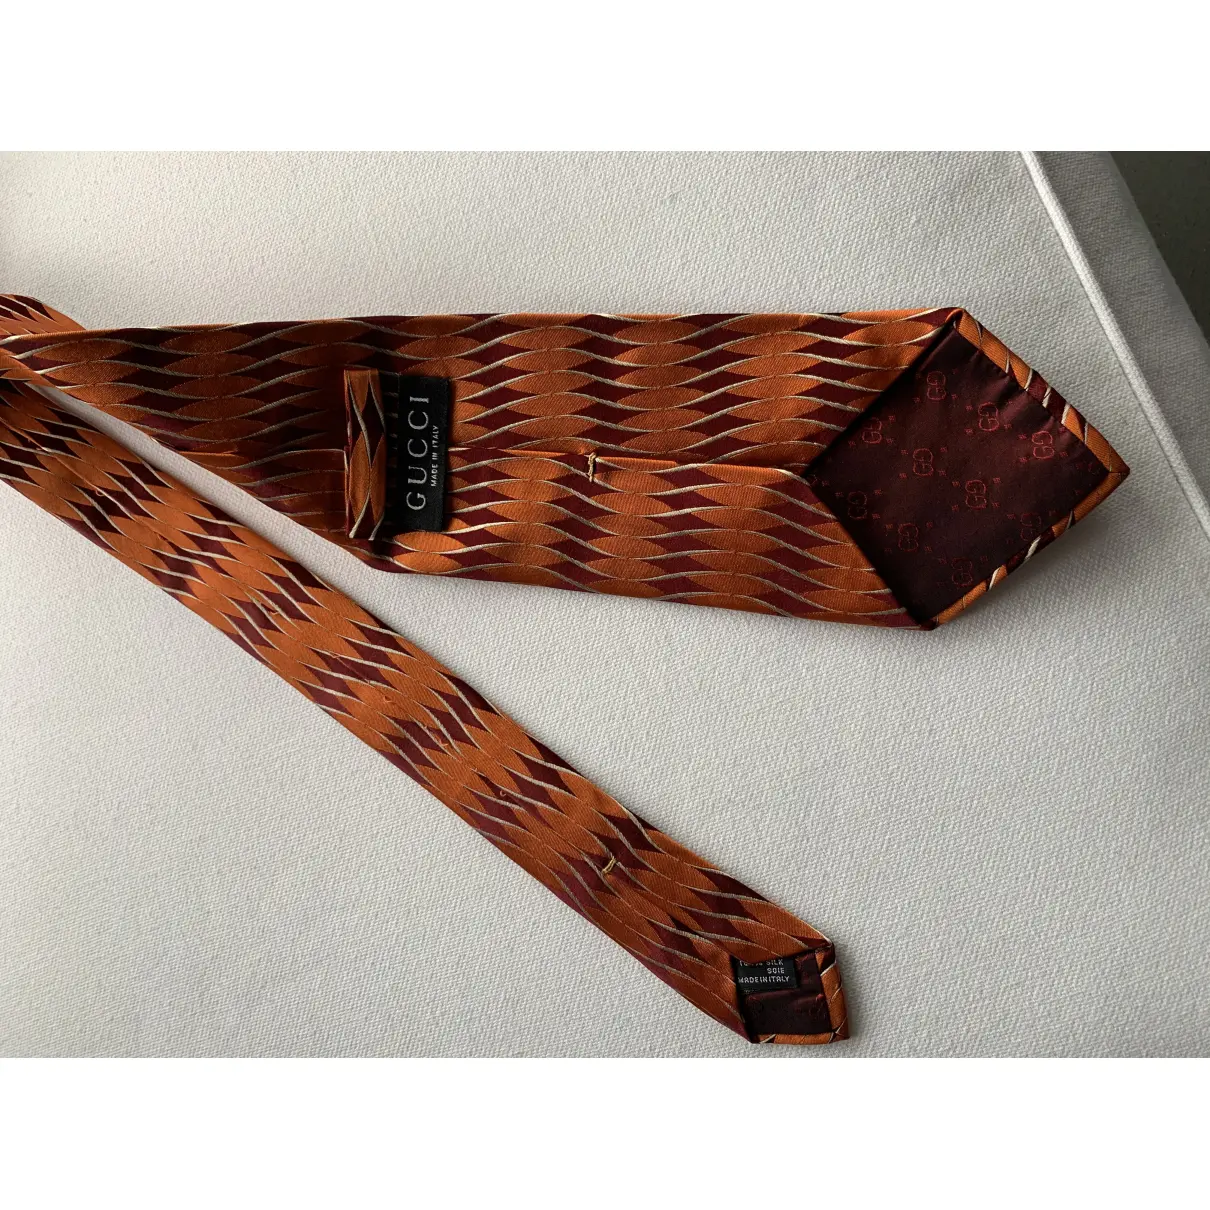 Silk tie Gucci - Vintage